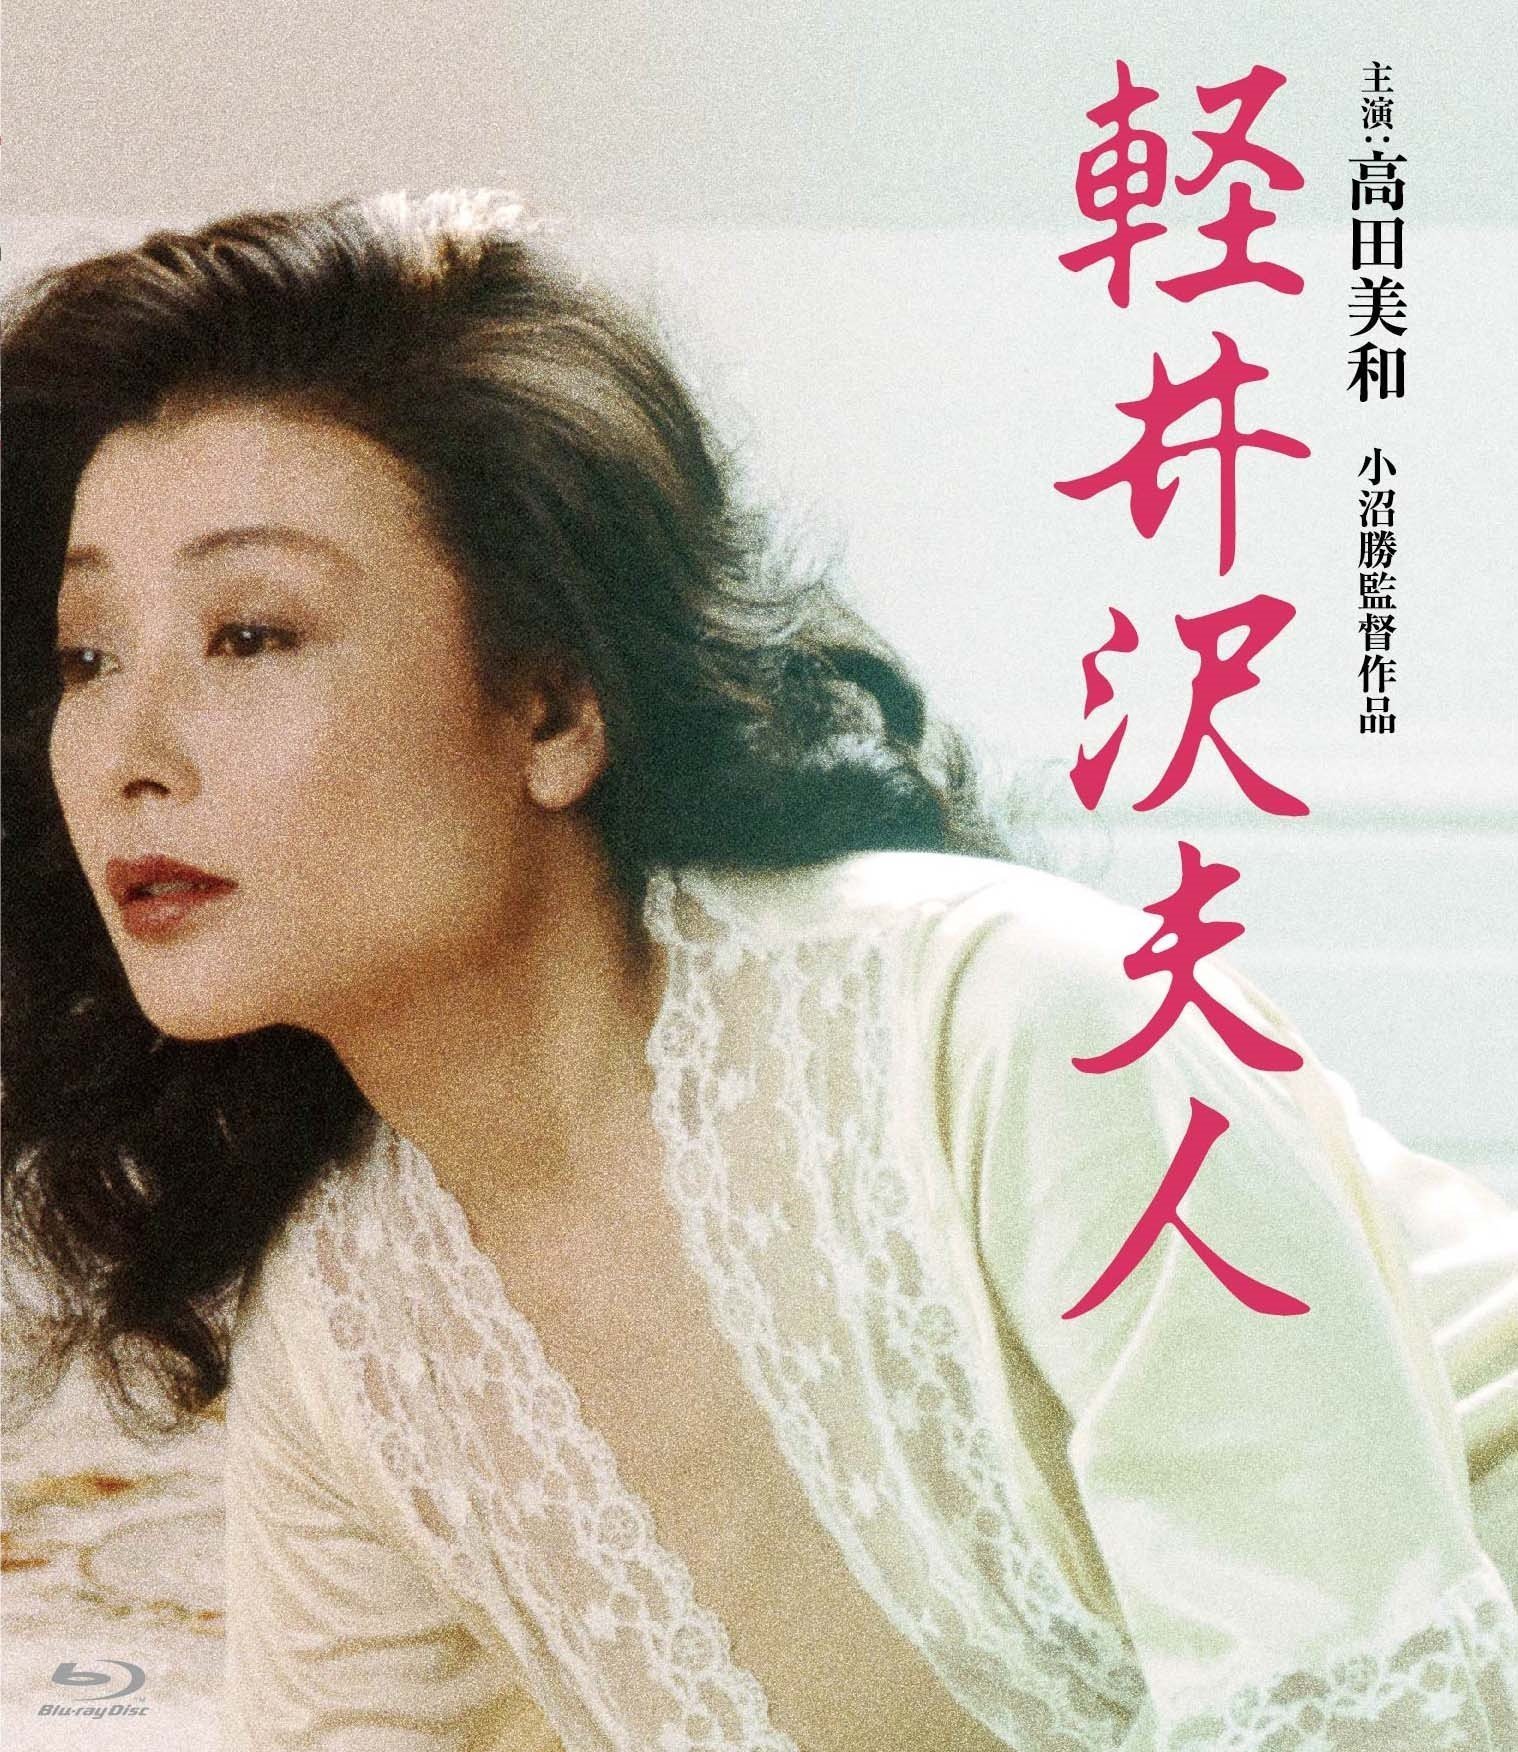 轻井泽夫人 / Karuizawa fujin[日版蓝光原盘][DIY正片.简繁字幕]  Lady Karuizawa 1982 JPN Blu-ray 1080p AVC TrueHD 2.0-blucook#398@CHDBits  [21.32 GB]-1.jpg